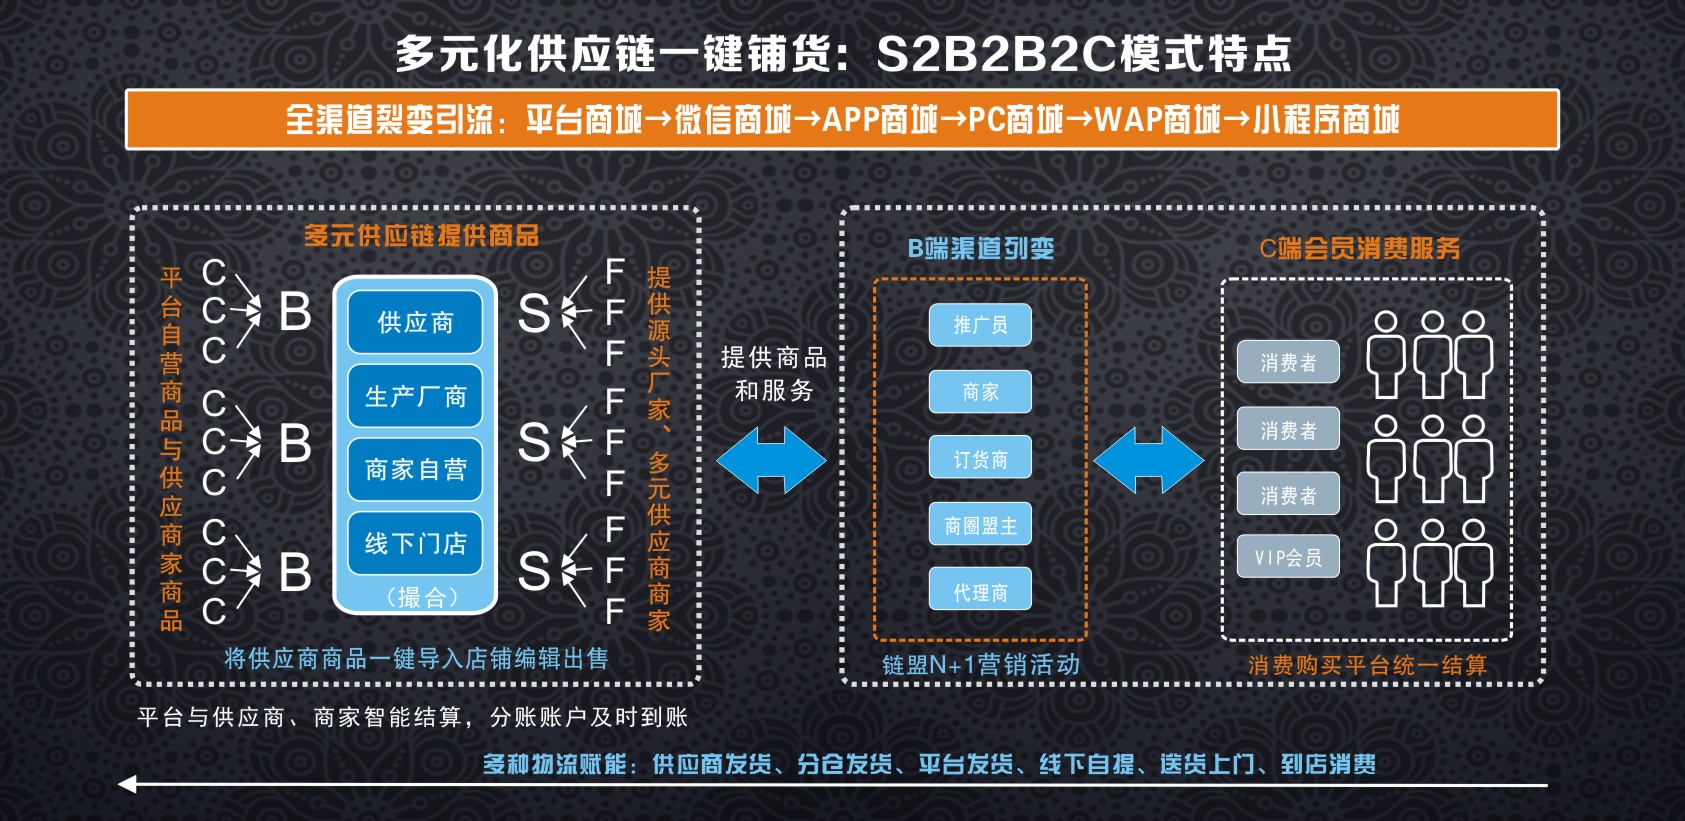 多元化供应链一键铺货：S2B2B2C模式特点.jpg